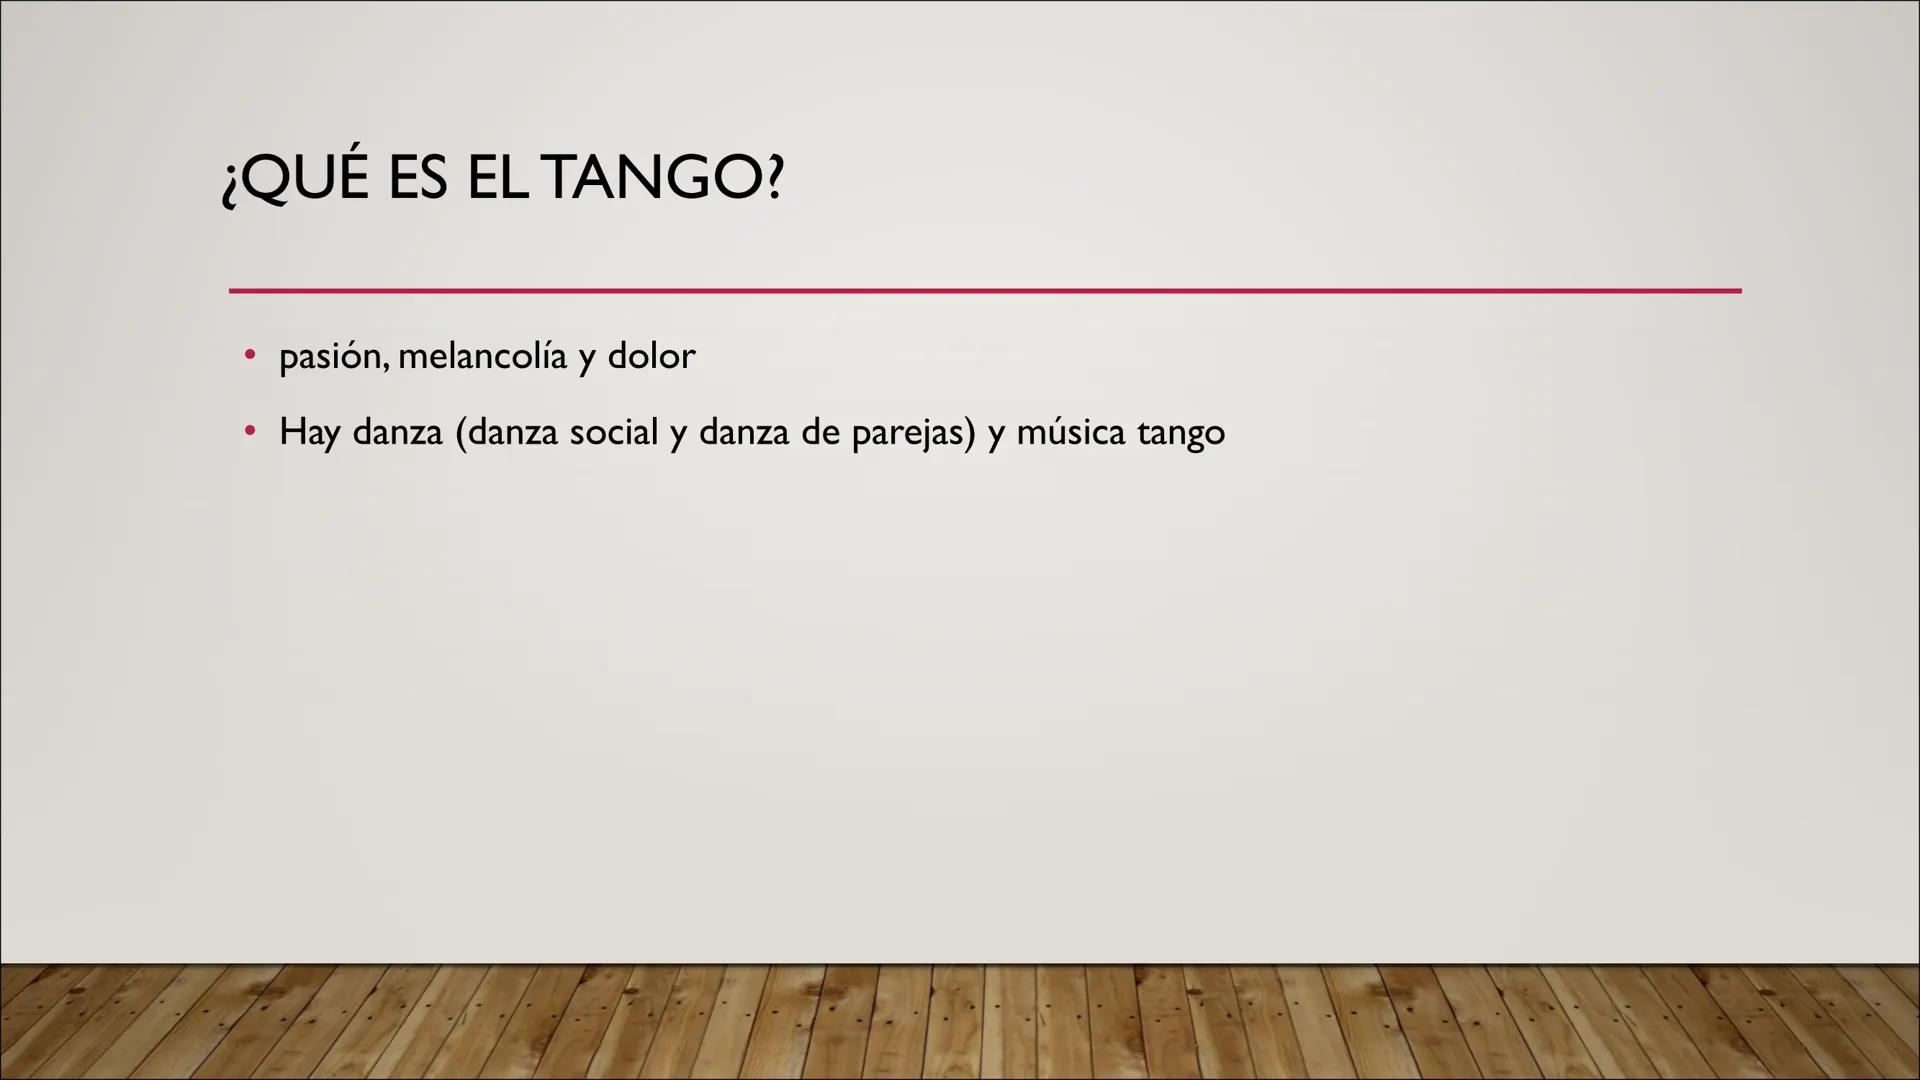 TANGO
PRESENTACIÓN DE EMILY POLCH ESTRUCTURA
●
●
●
●
1. Hechos
●
1.1 ¿Qué es el tango? (Danza y Música)
1.2 ¿De dónde viene el tango?
1.3 Ev